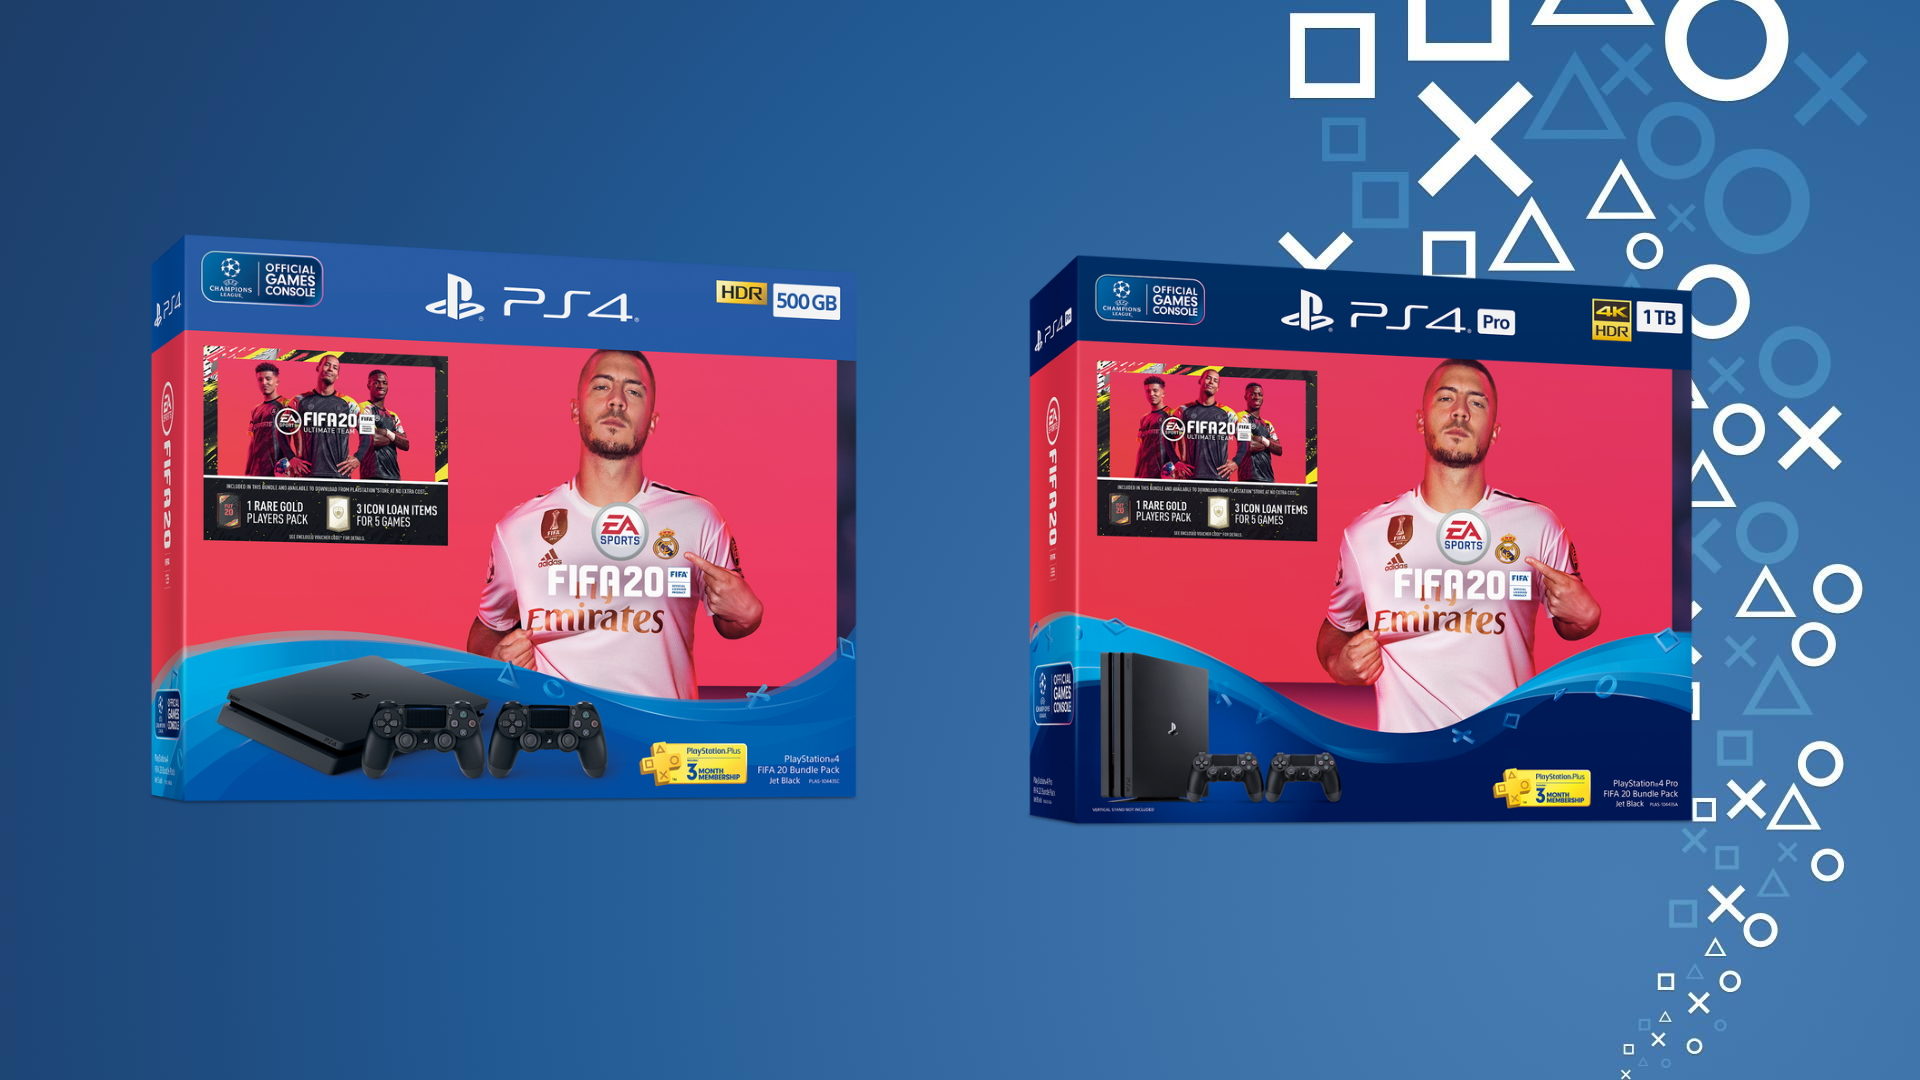 PlayStation FIFA 20 Bundle Packs Launching September 27th - BunnyGaming.com